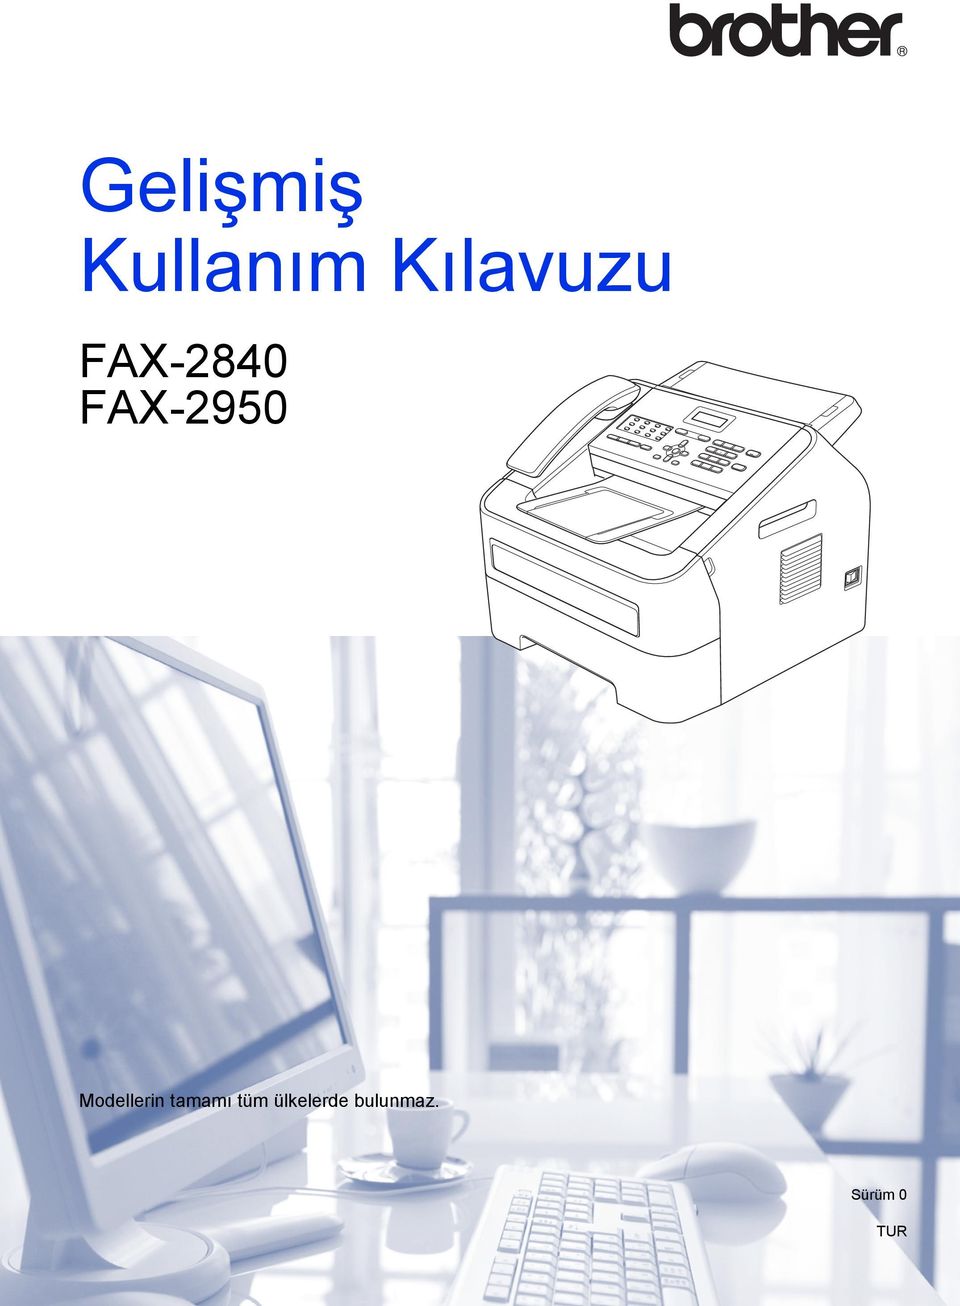 FAX-2950 Modellerin